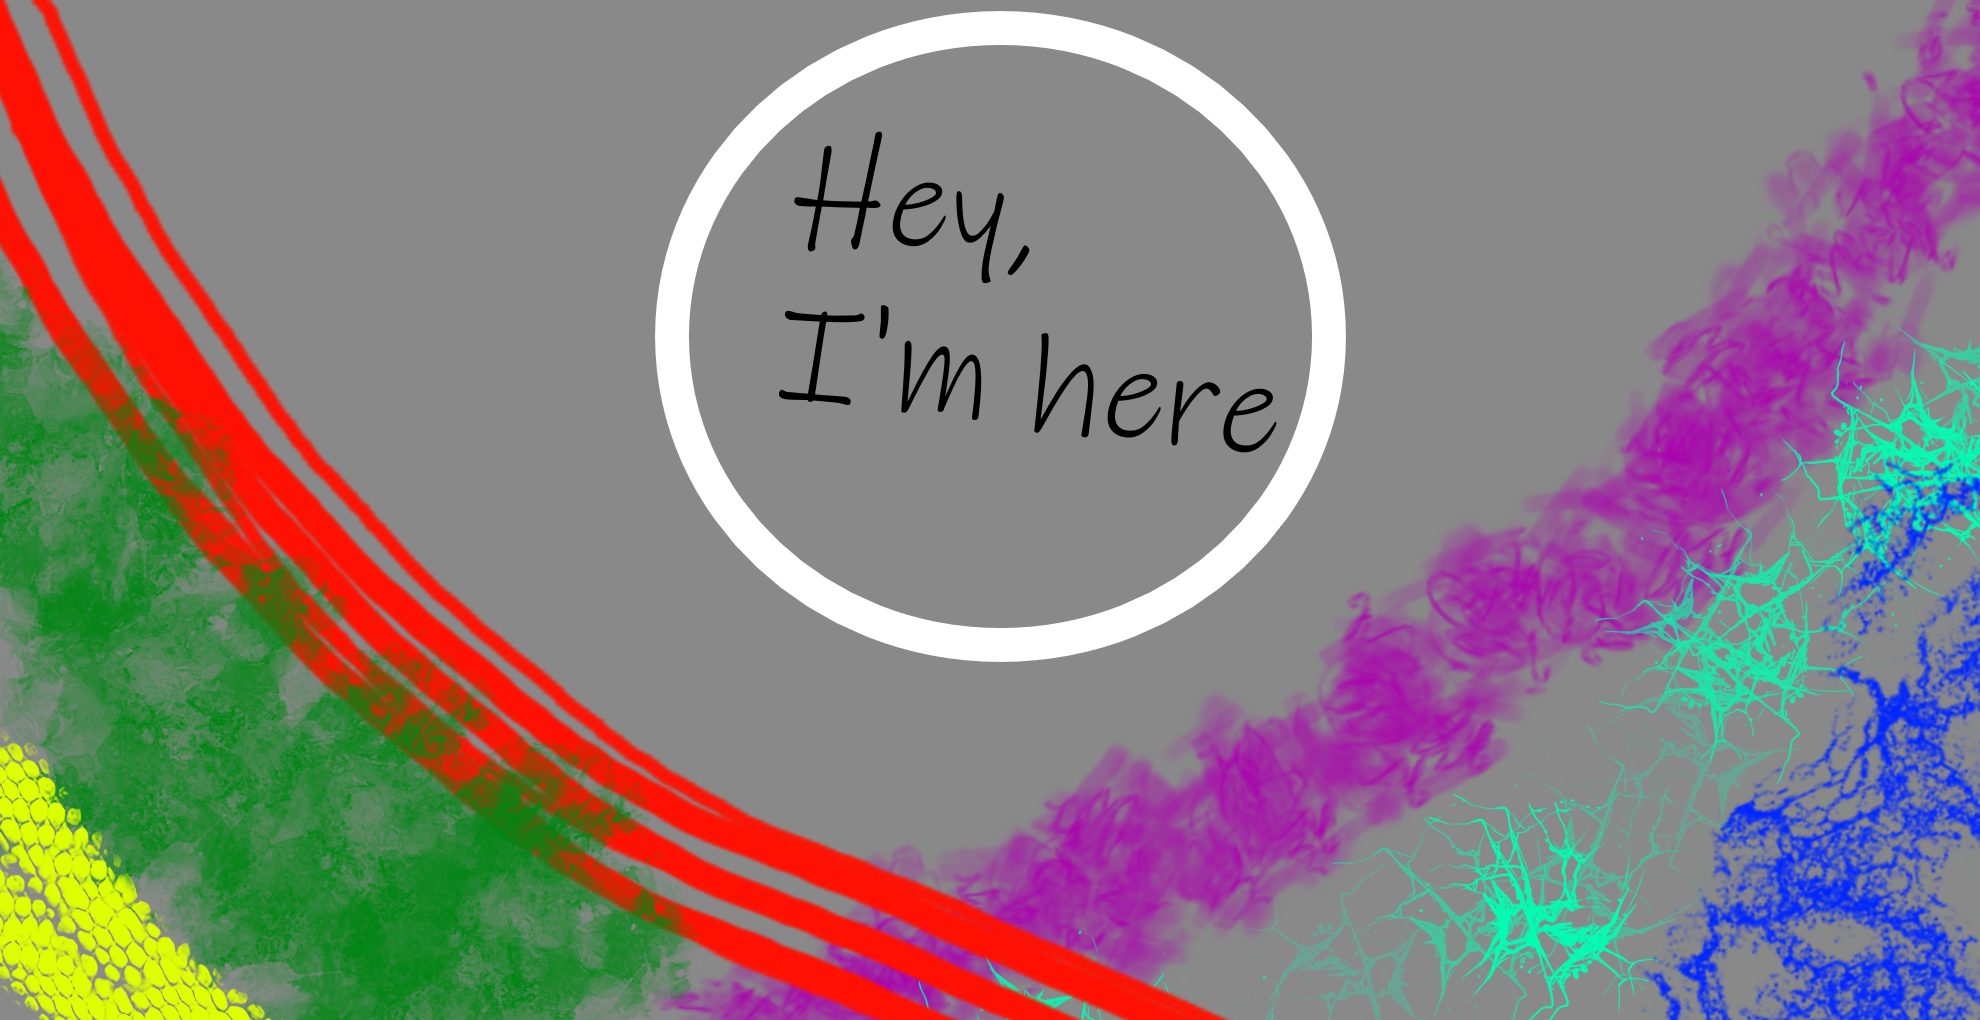 Hey, I'm here